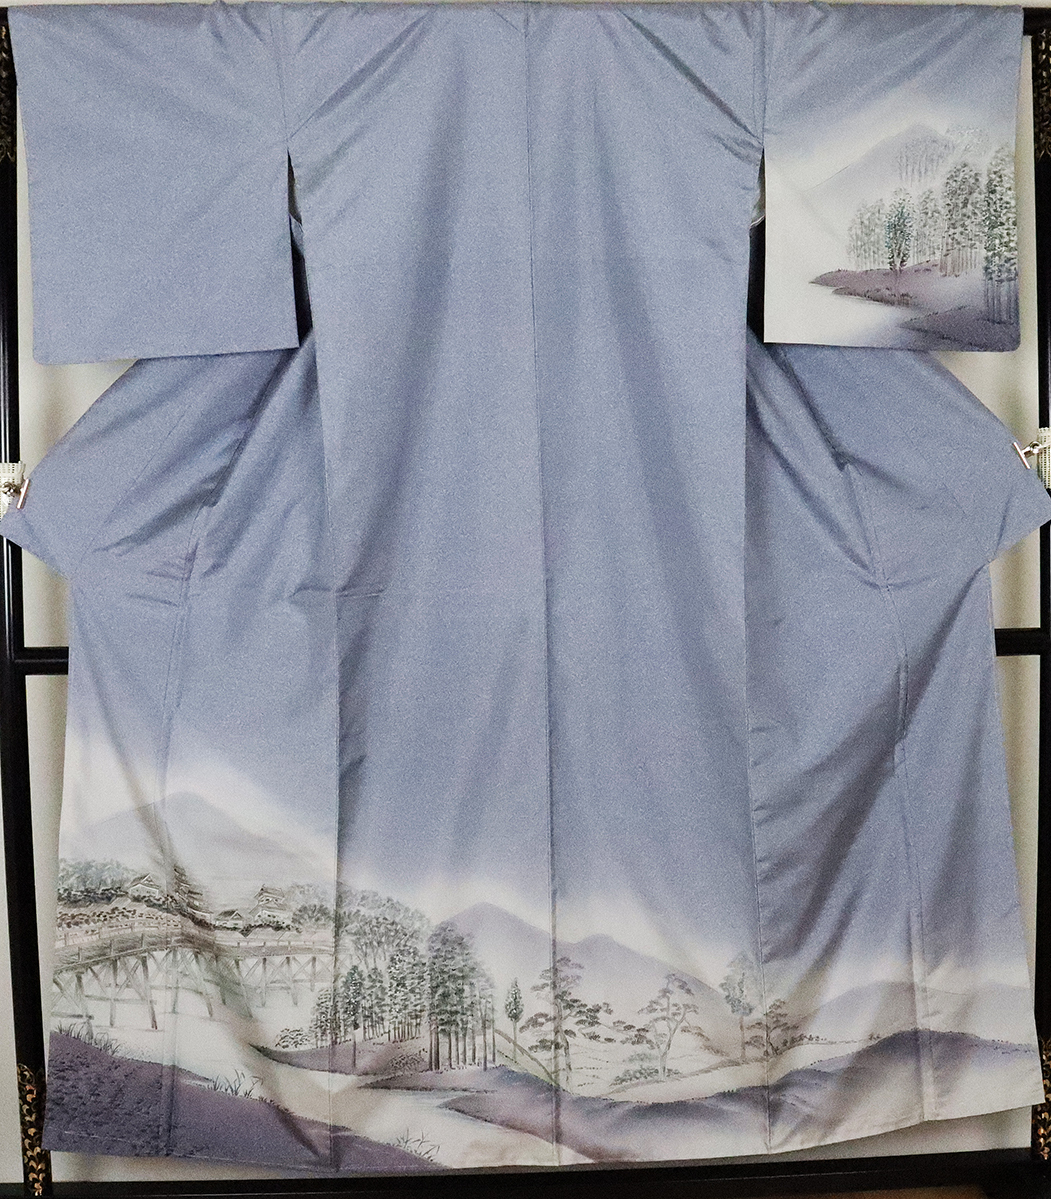 كيمونو رسمي مخطط أصلي من أوشيما تسوموجي, الحرير الخالص, مشهد الجسر المرسوم باليد, ki19760, كيمونو نسائي, كيمونو, فستان الزيارة, جاهز